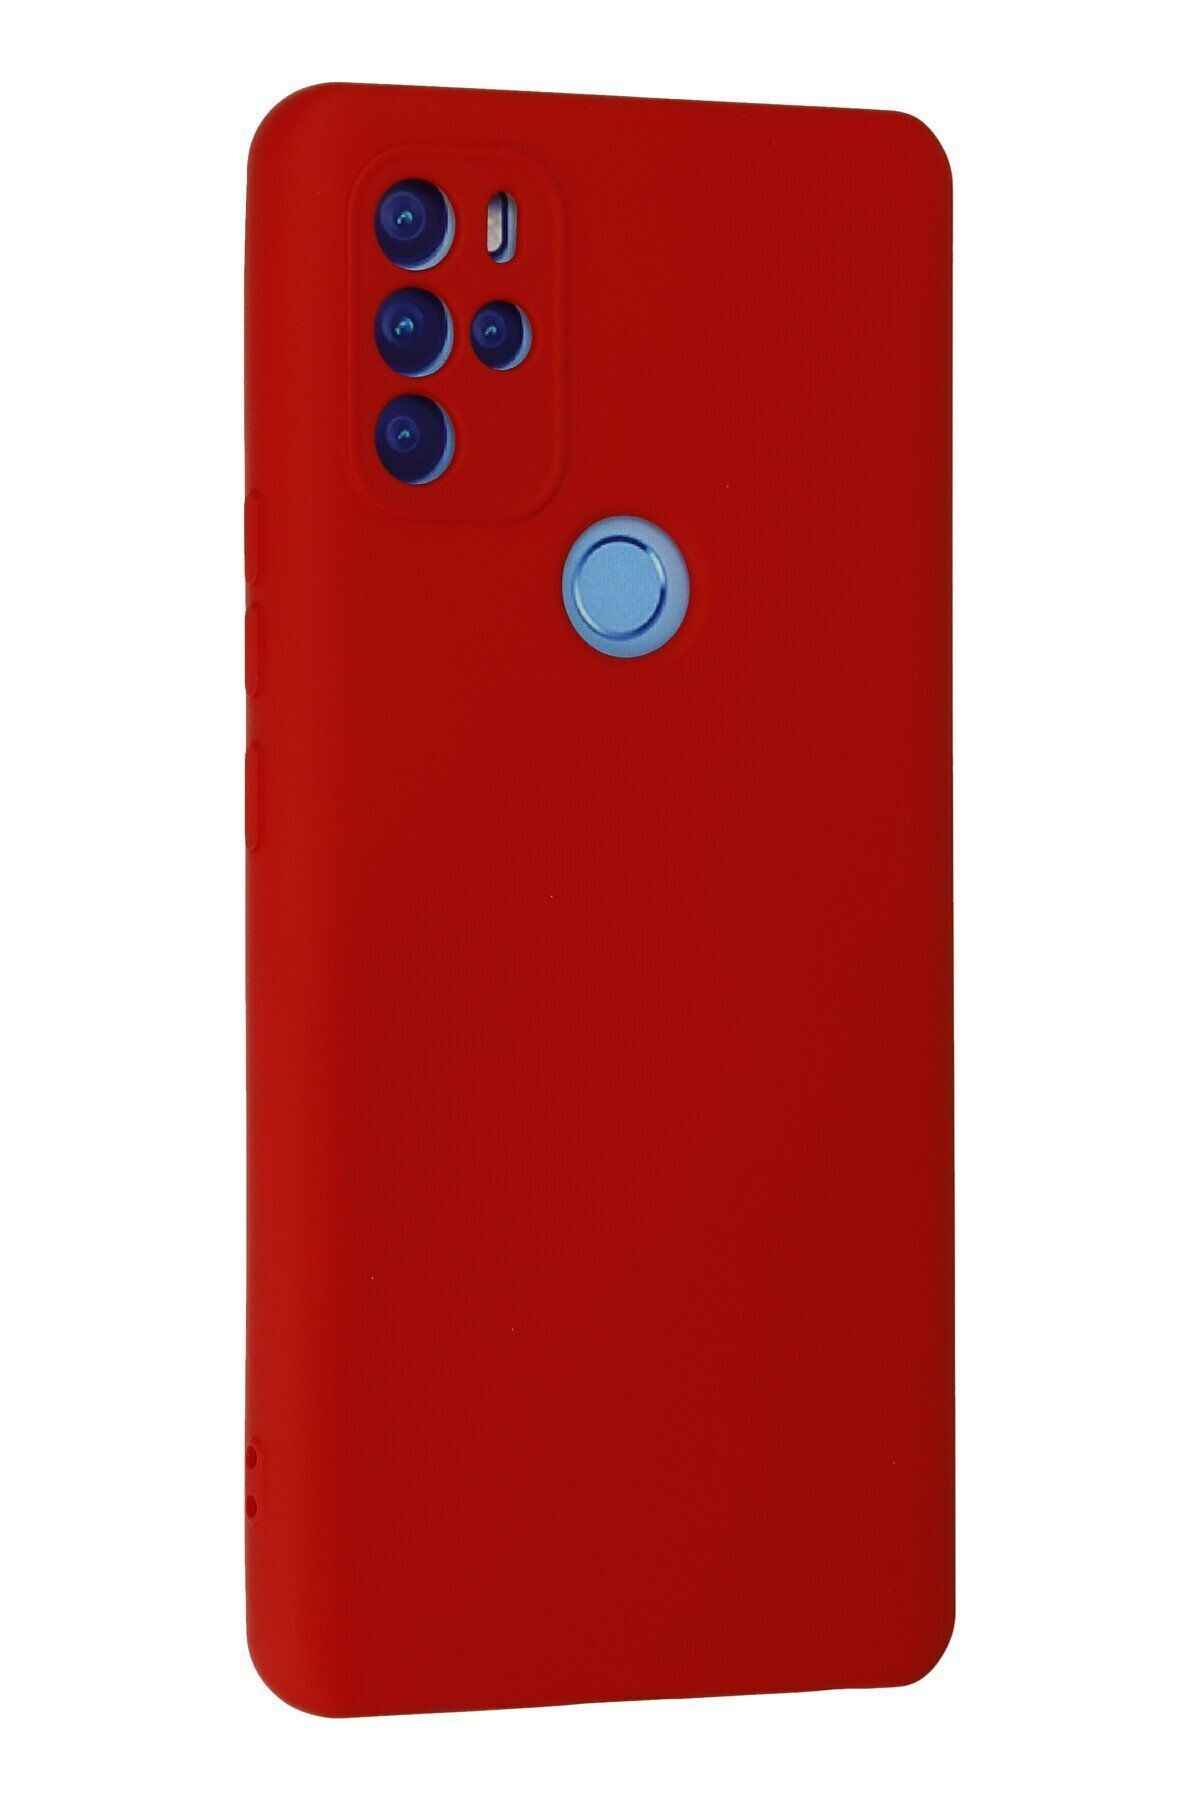 NewFace Omix X300 - Soft Dokulu İç Kısmı Süet Lansman Kılıf - Kırmızı Renk içi kadife Kapak